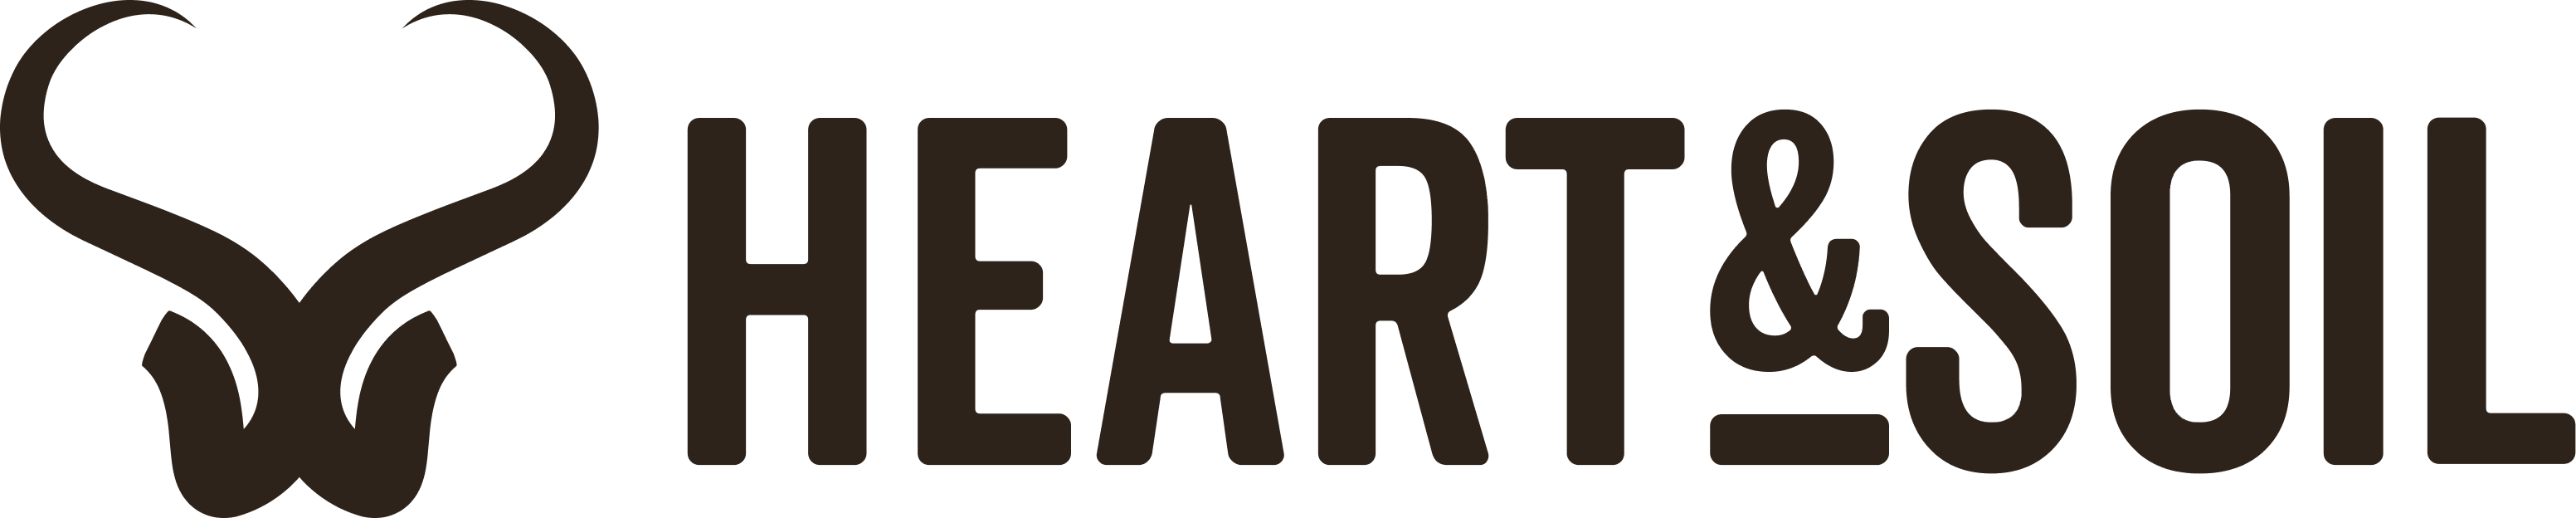 Heart & Soil logo